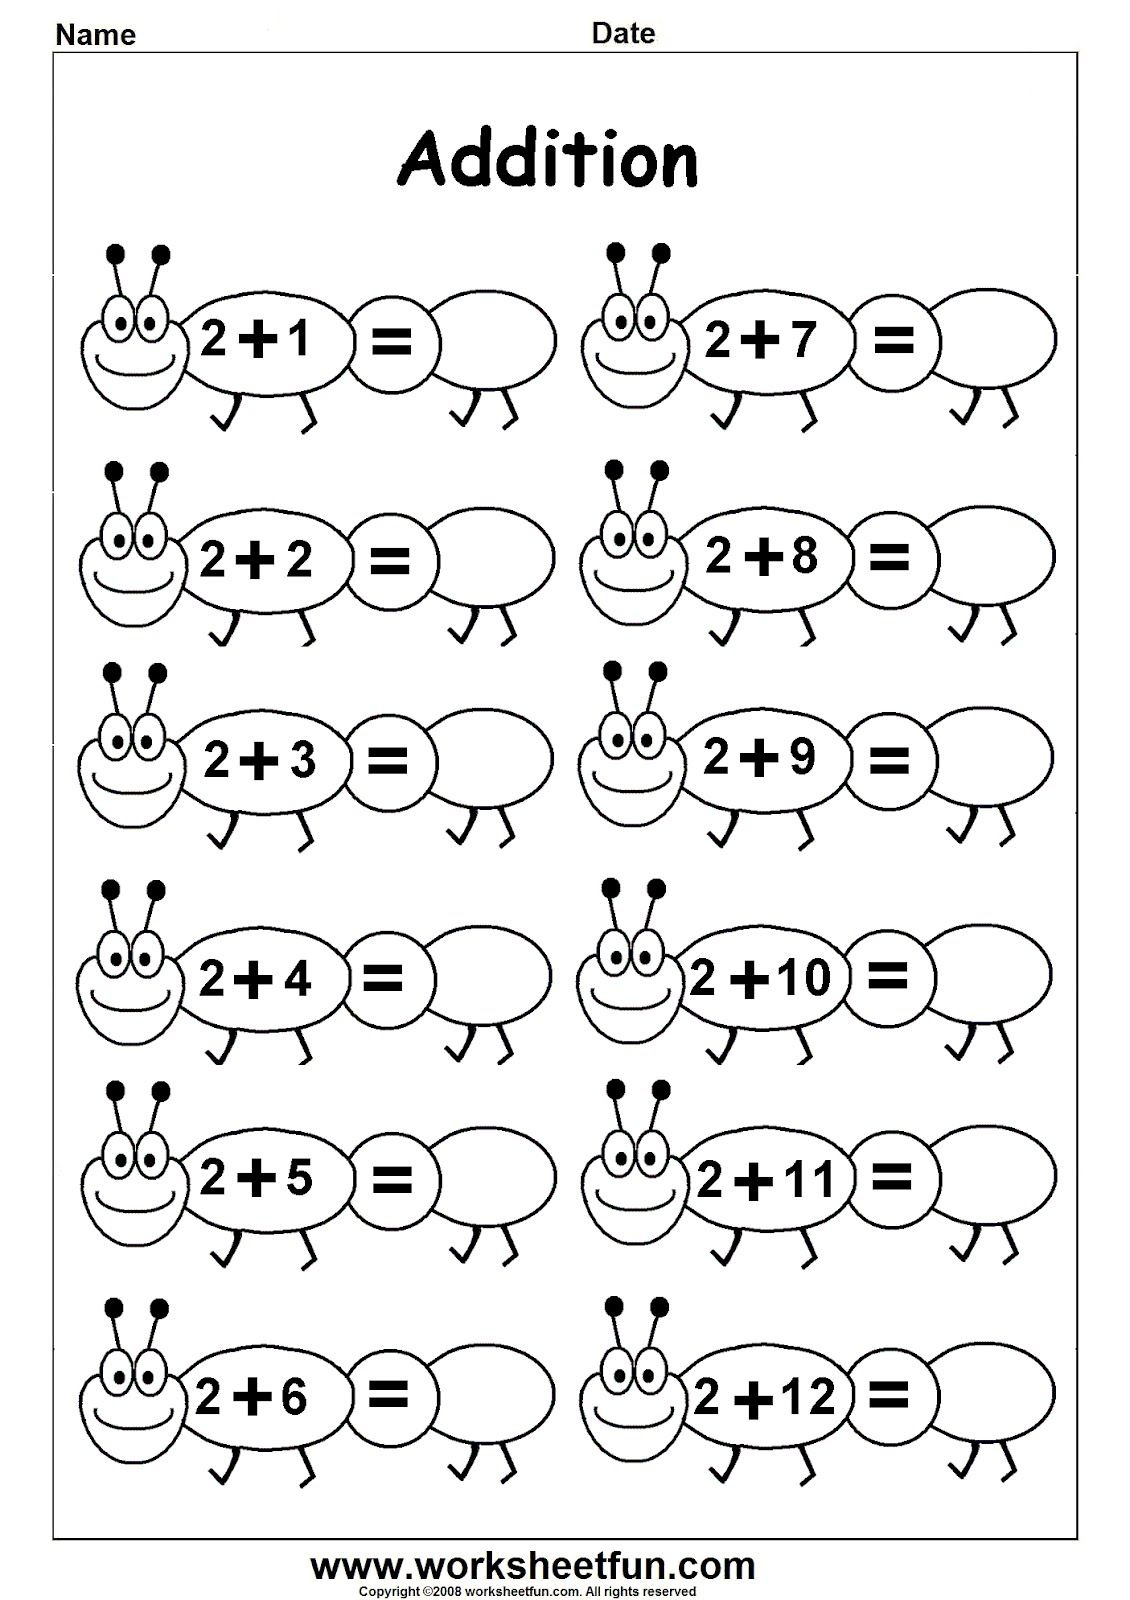 Free Printable Worksheets For Preschool - Worksheetfun inside Free Printable Math Worksheets For Kindergarten